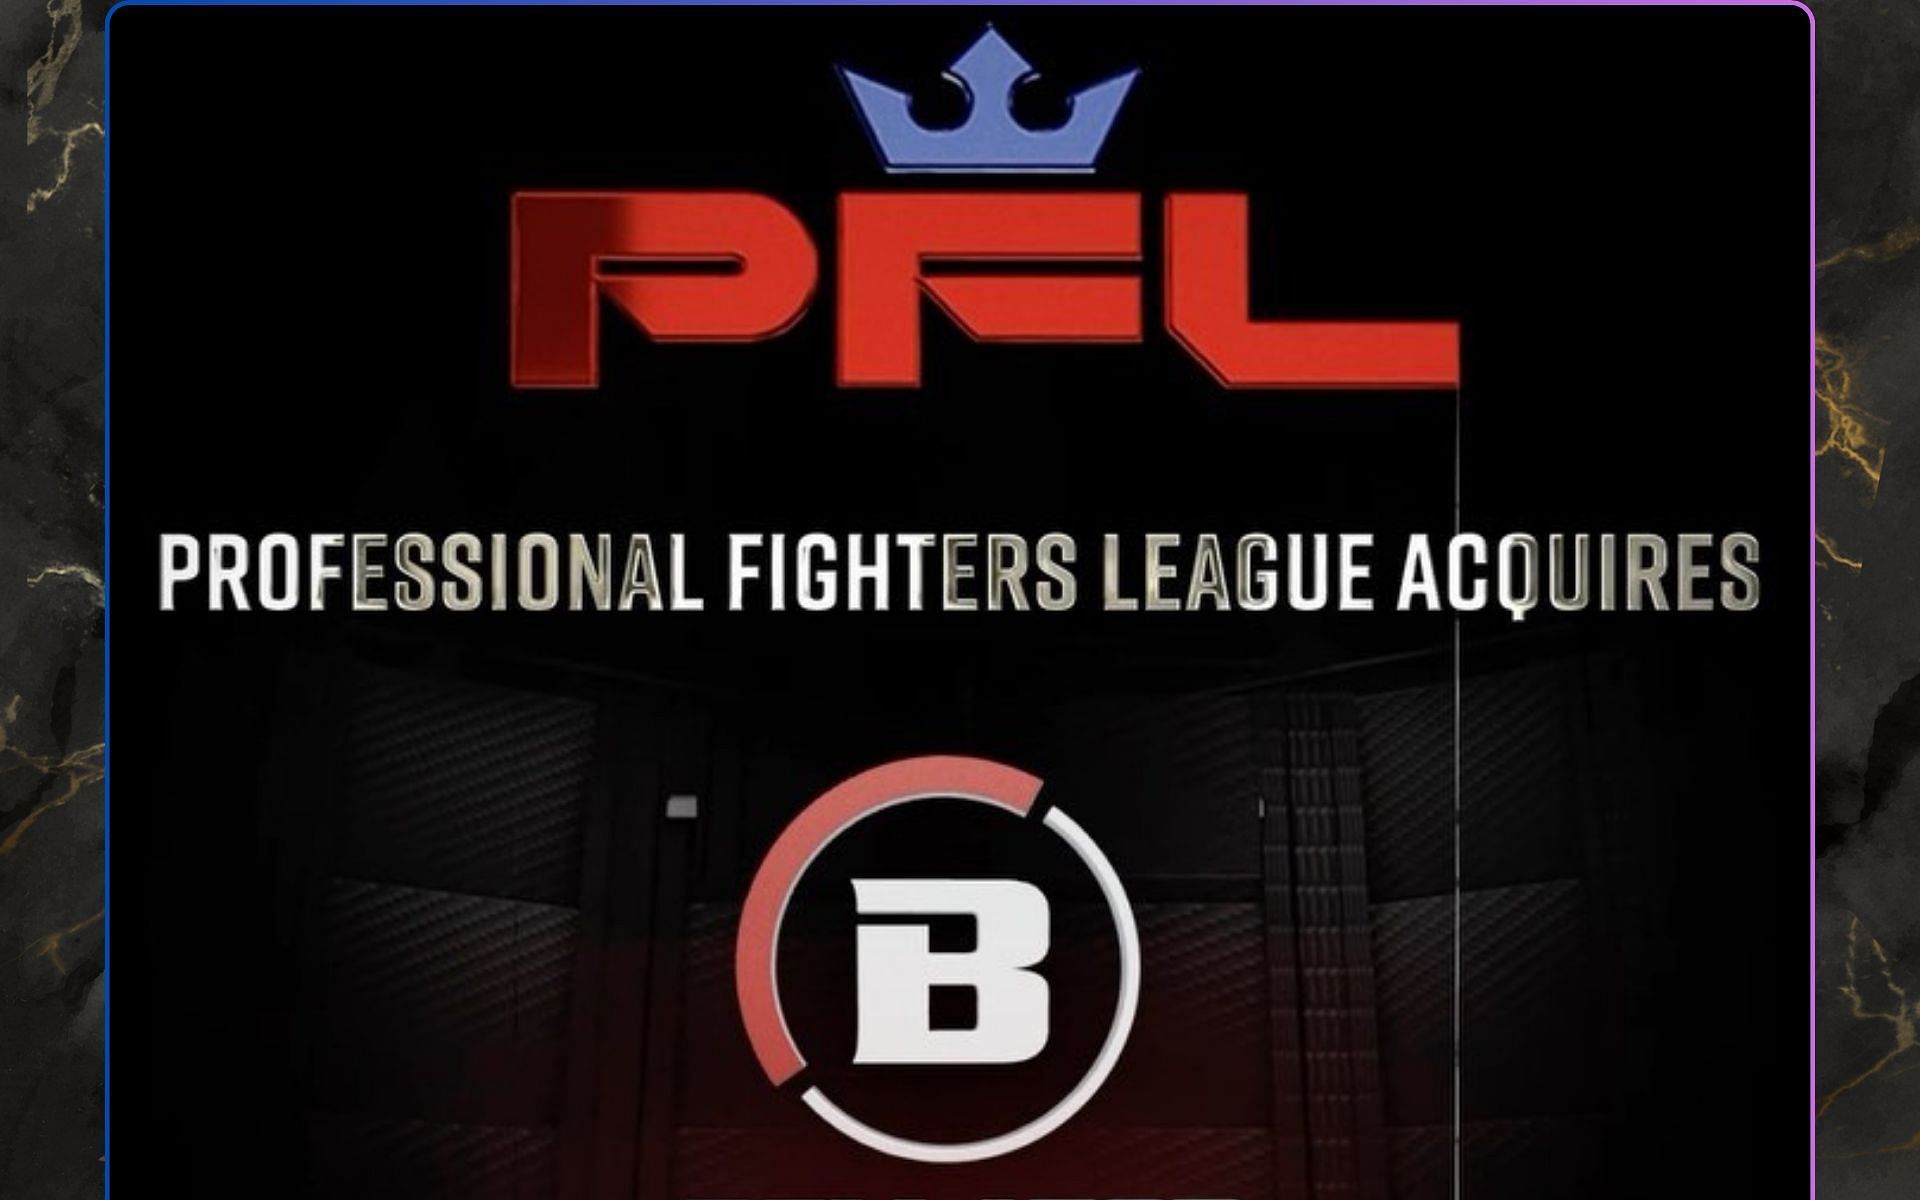 PFL acquires Bellator MMA